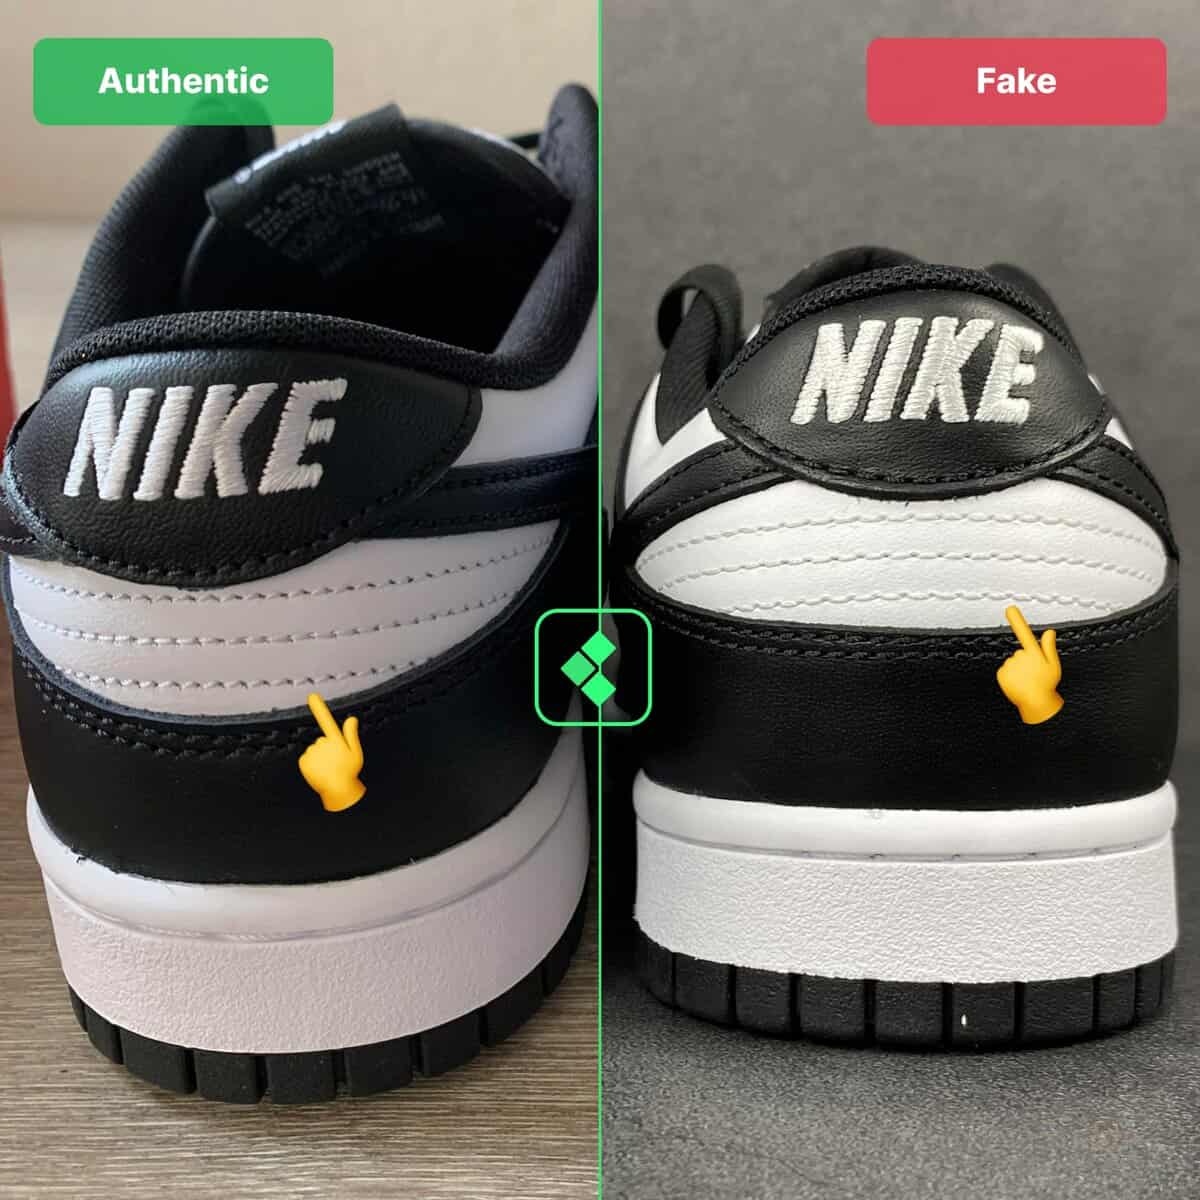 Nike Dunk Original vs fake